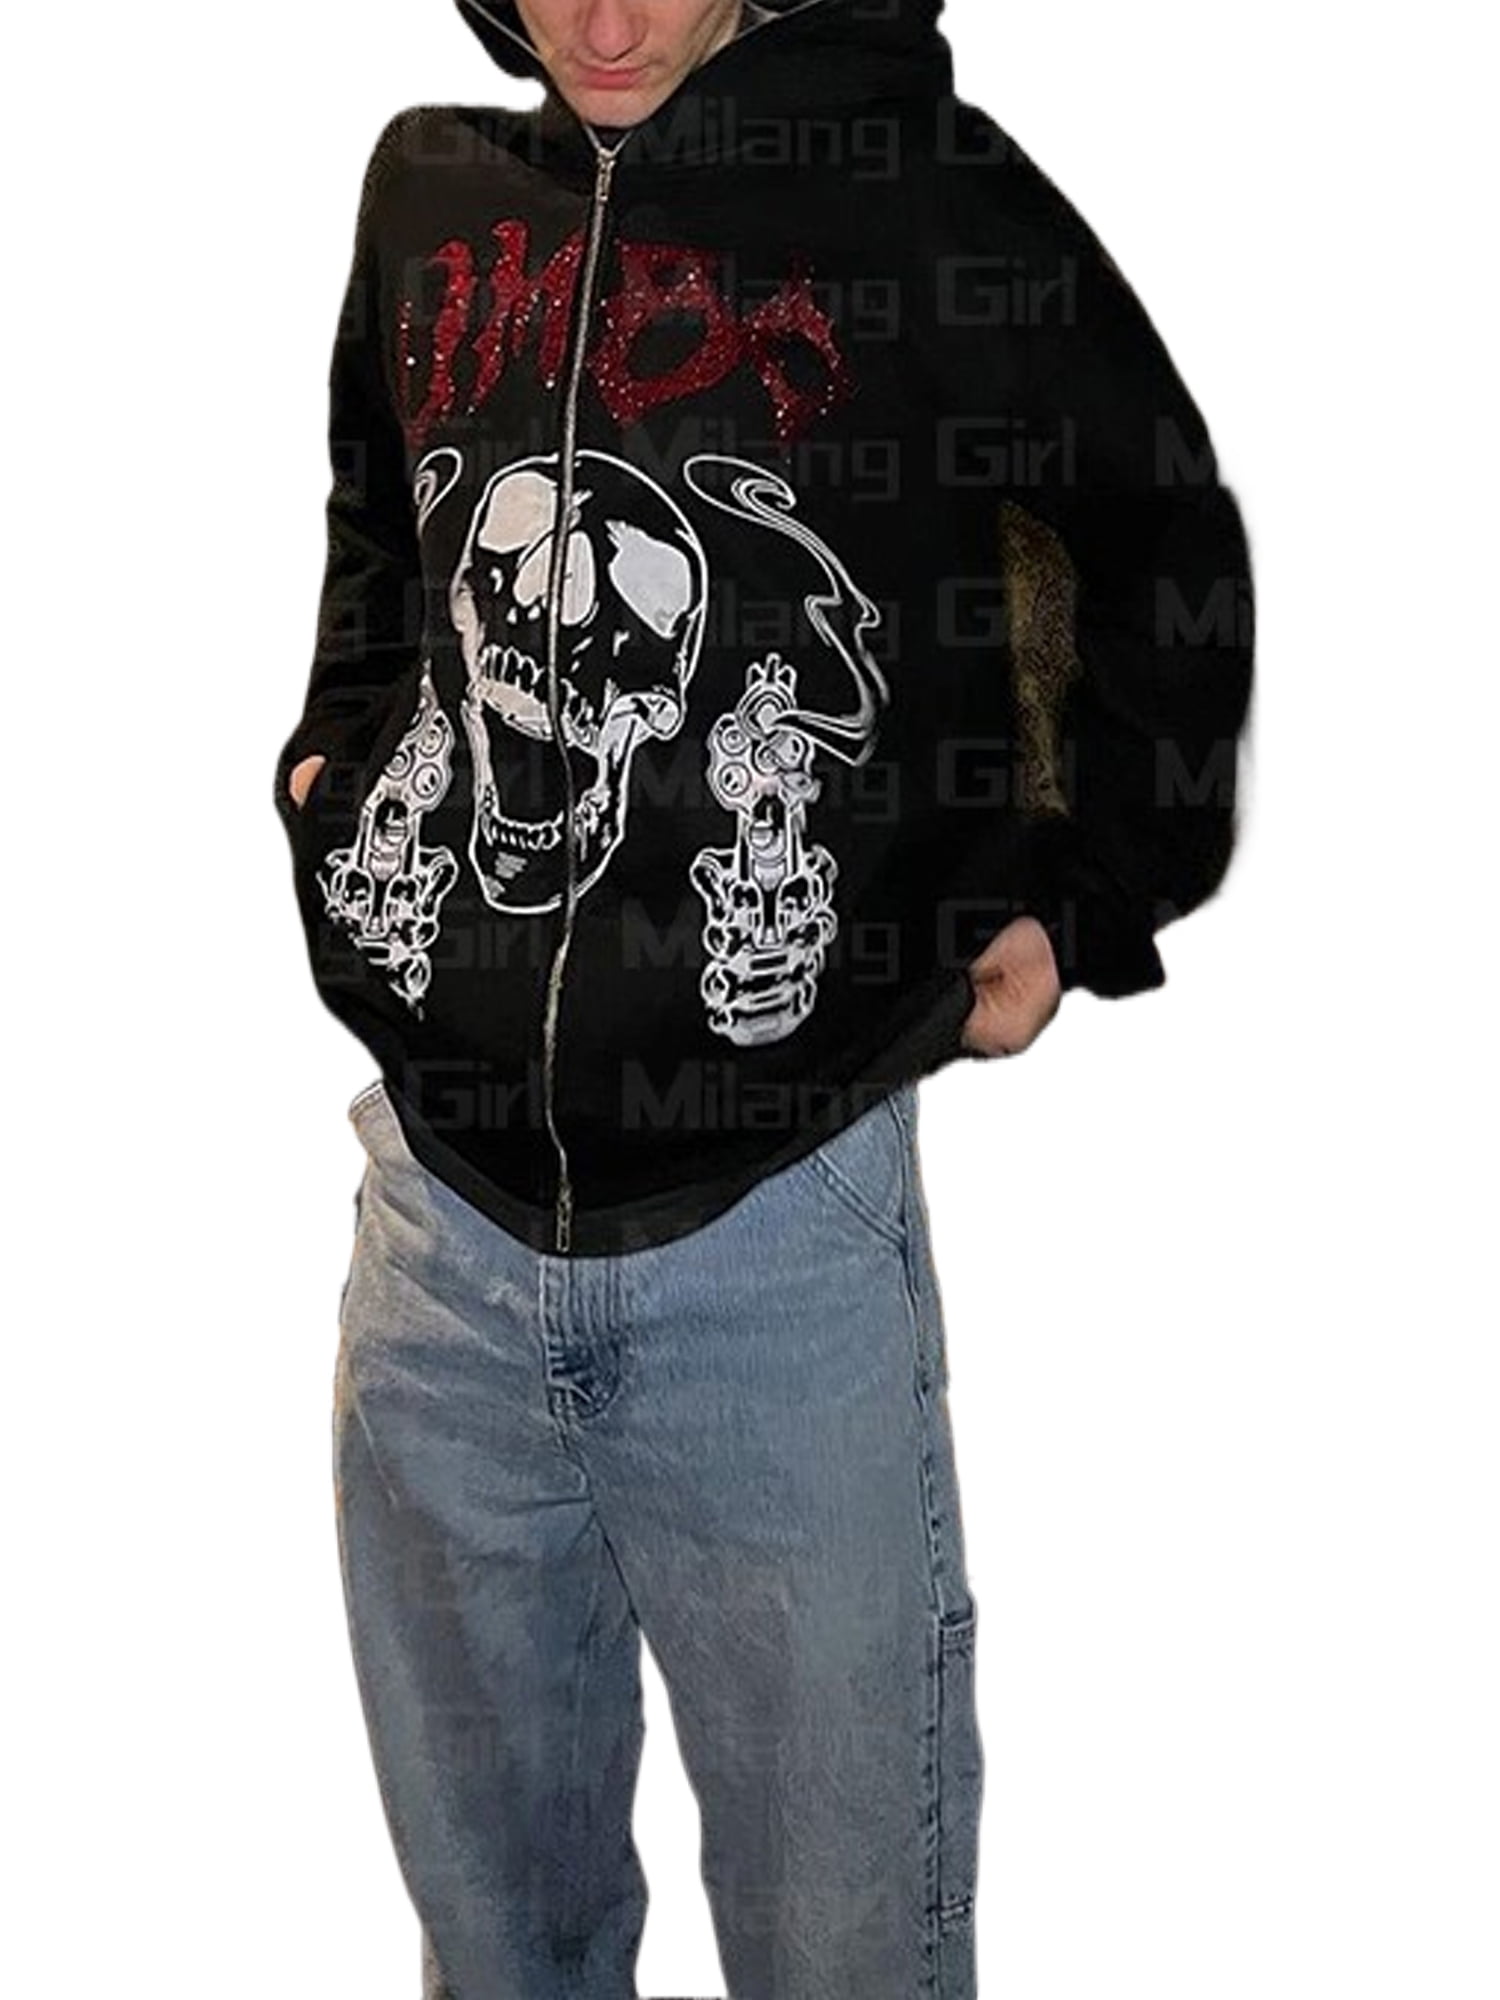 American skull puff print Hoodies Women Y2k Sweatshirt Goth Streetwear